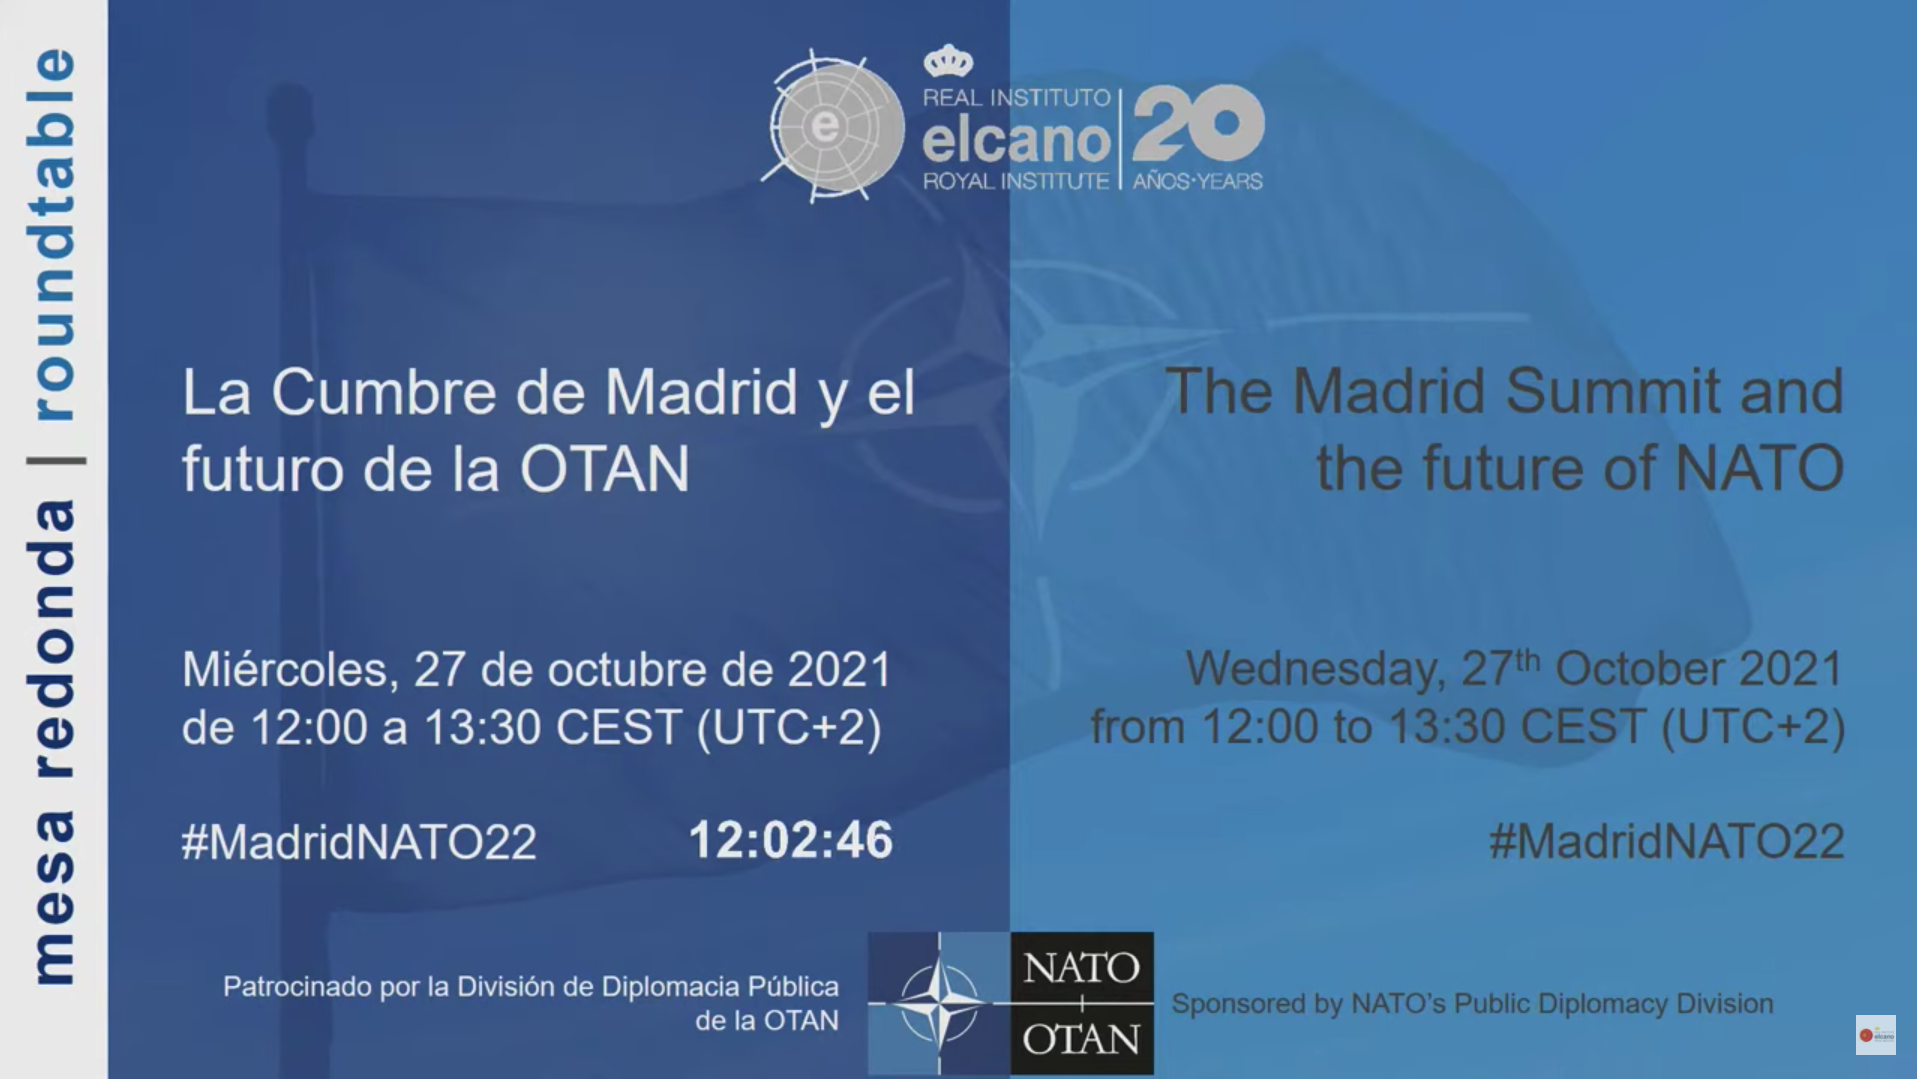 Mesa redonda “La Cumbre de Madrid y el futuro de la OTAN”